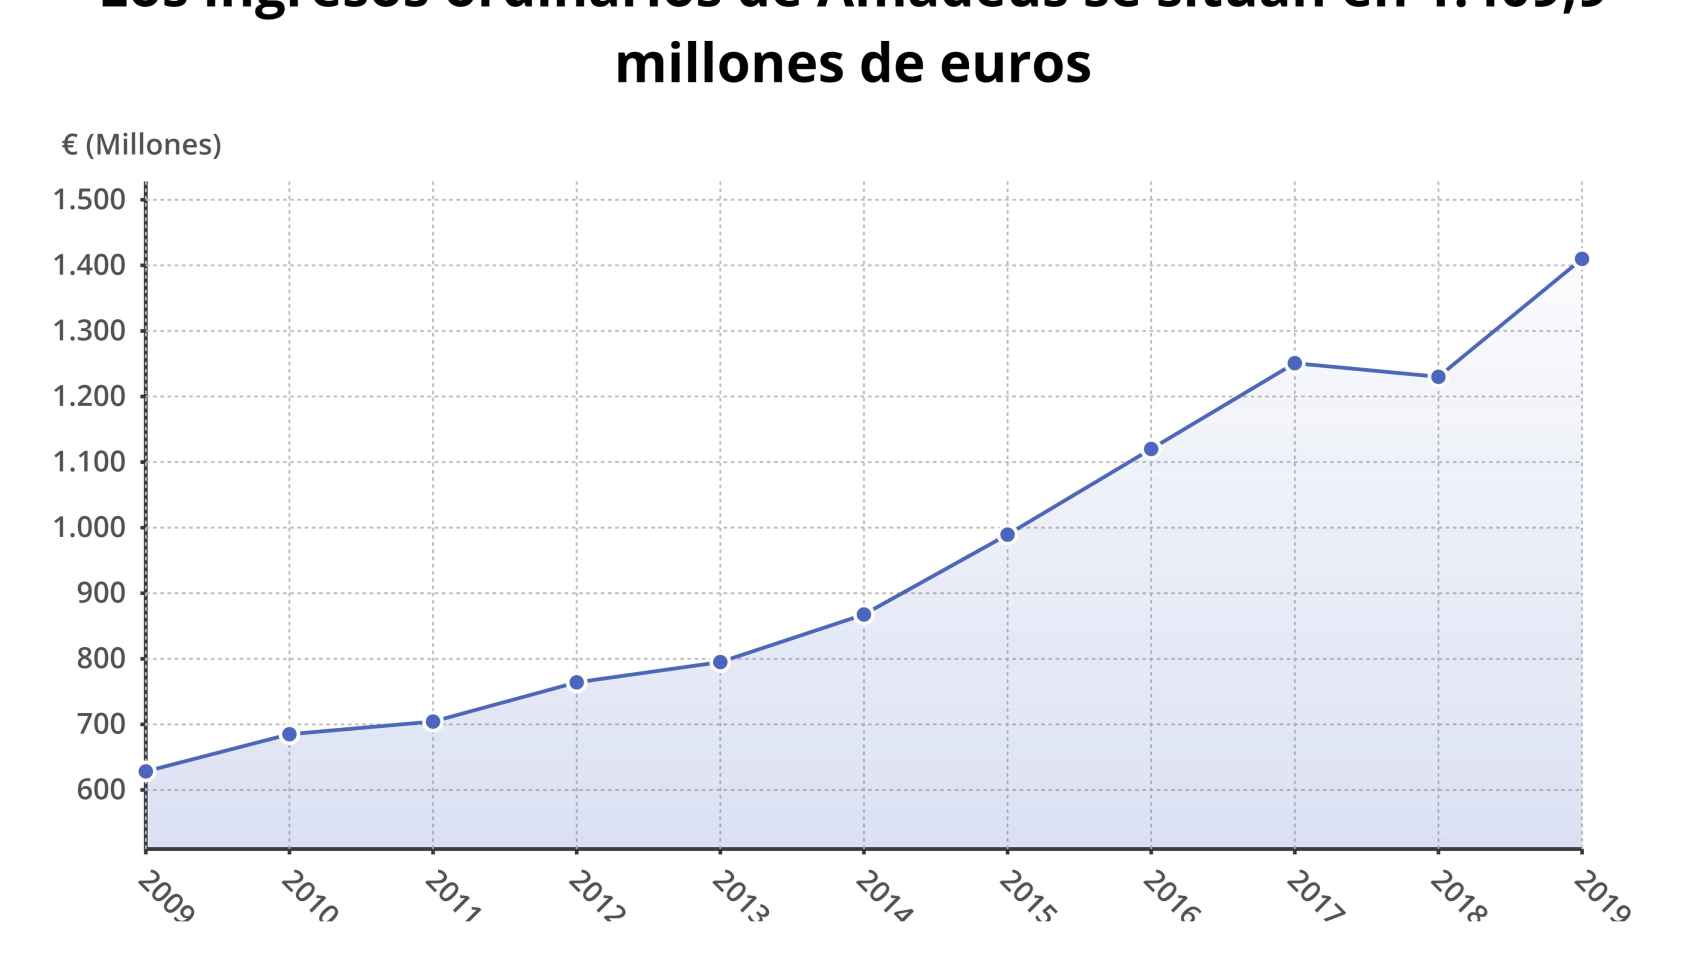 Grárfico de los ingresos de Amadeus en el primer trimestre de los últimos años.